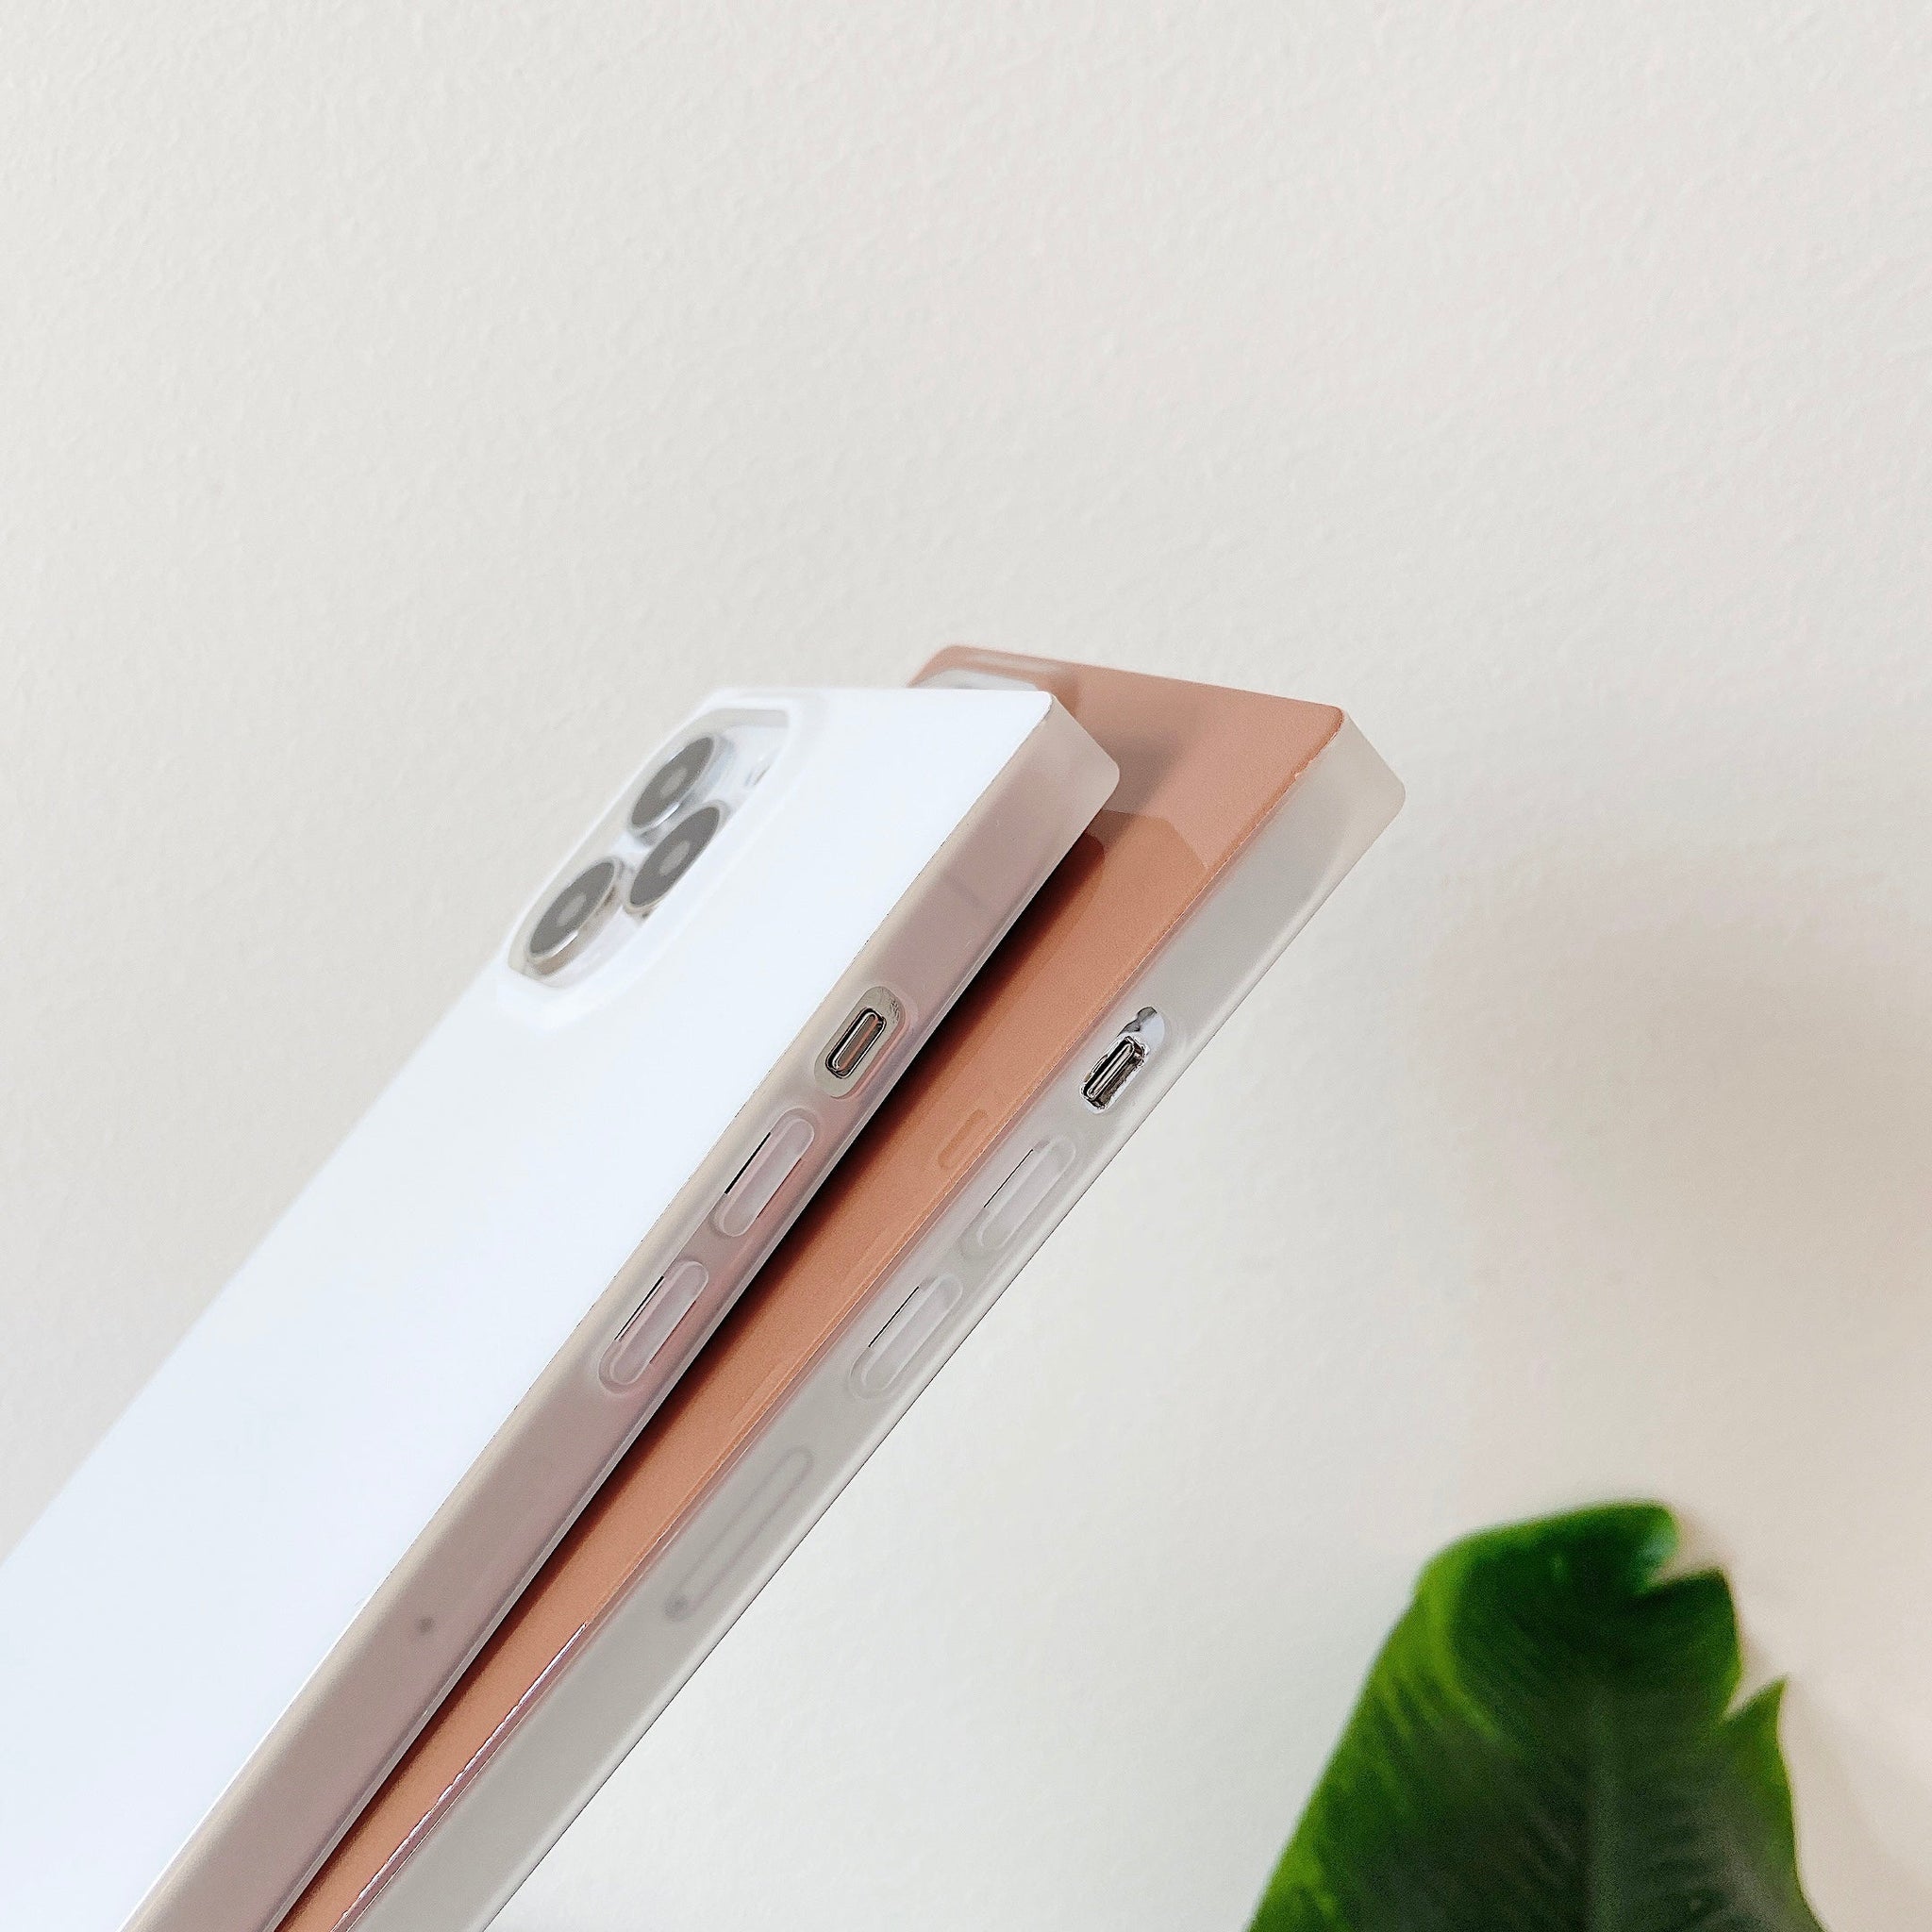 iPhone 13 Pro Max Case Square Neutral Plain Color (Honey)